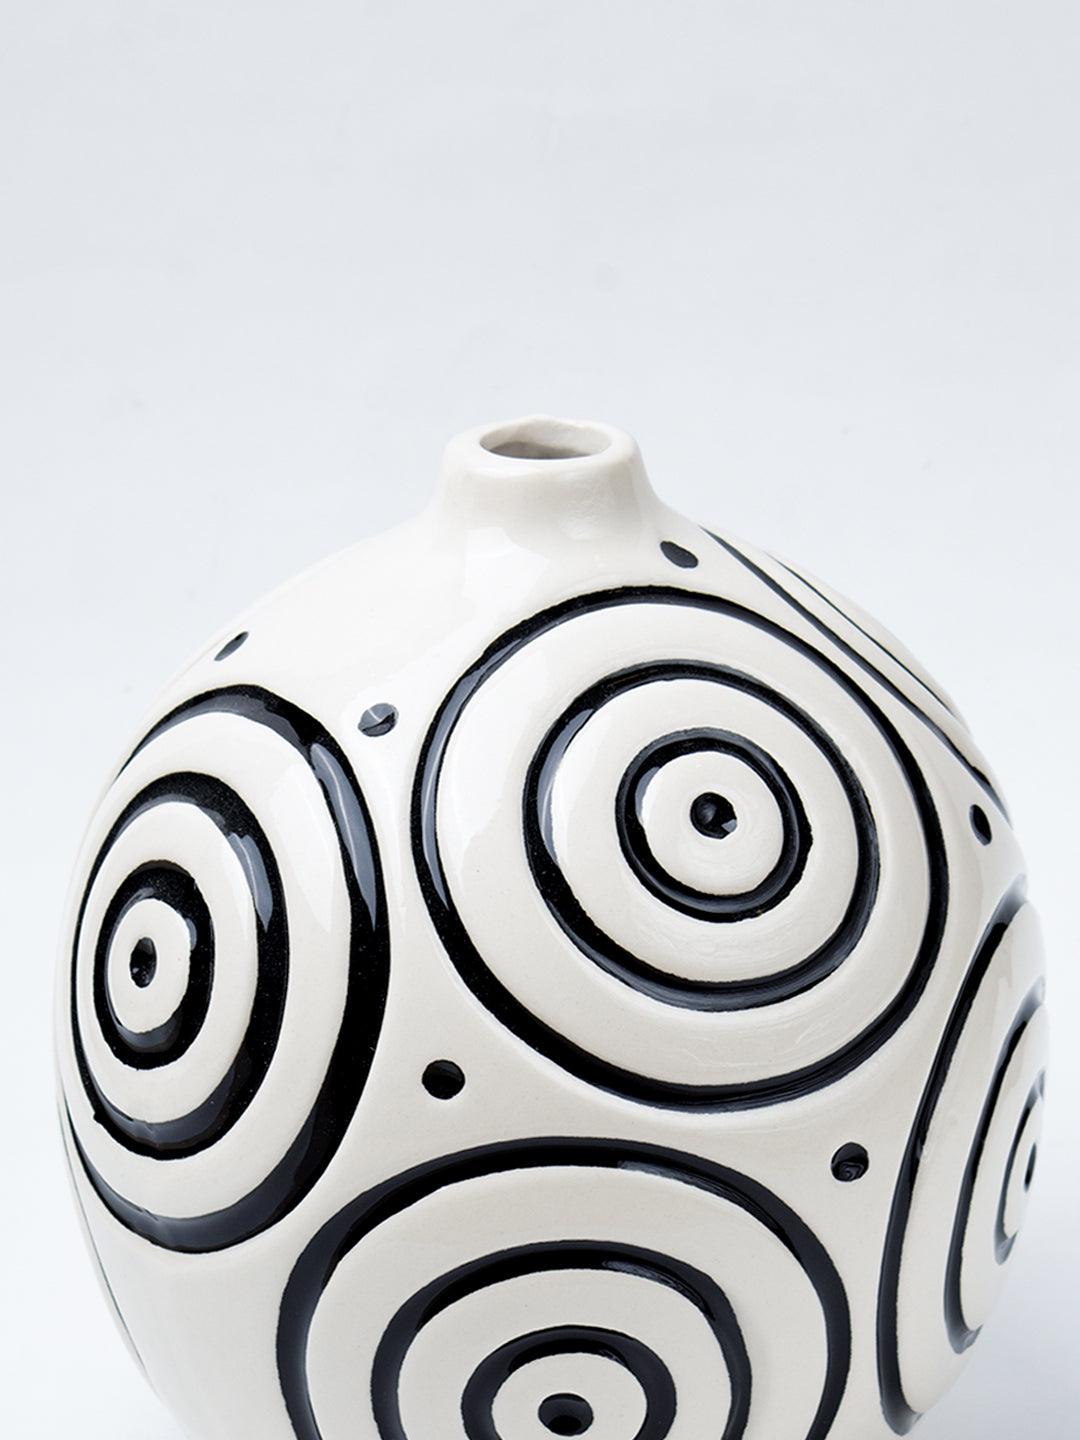 Black & White Ceramic Round Vase - Cuircular Pattern, Flower Holder - 4